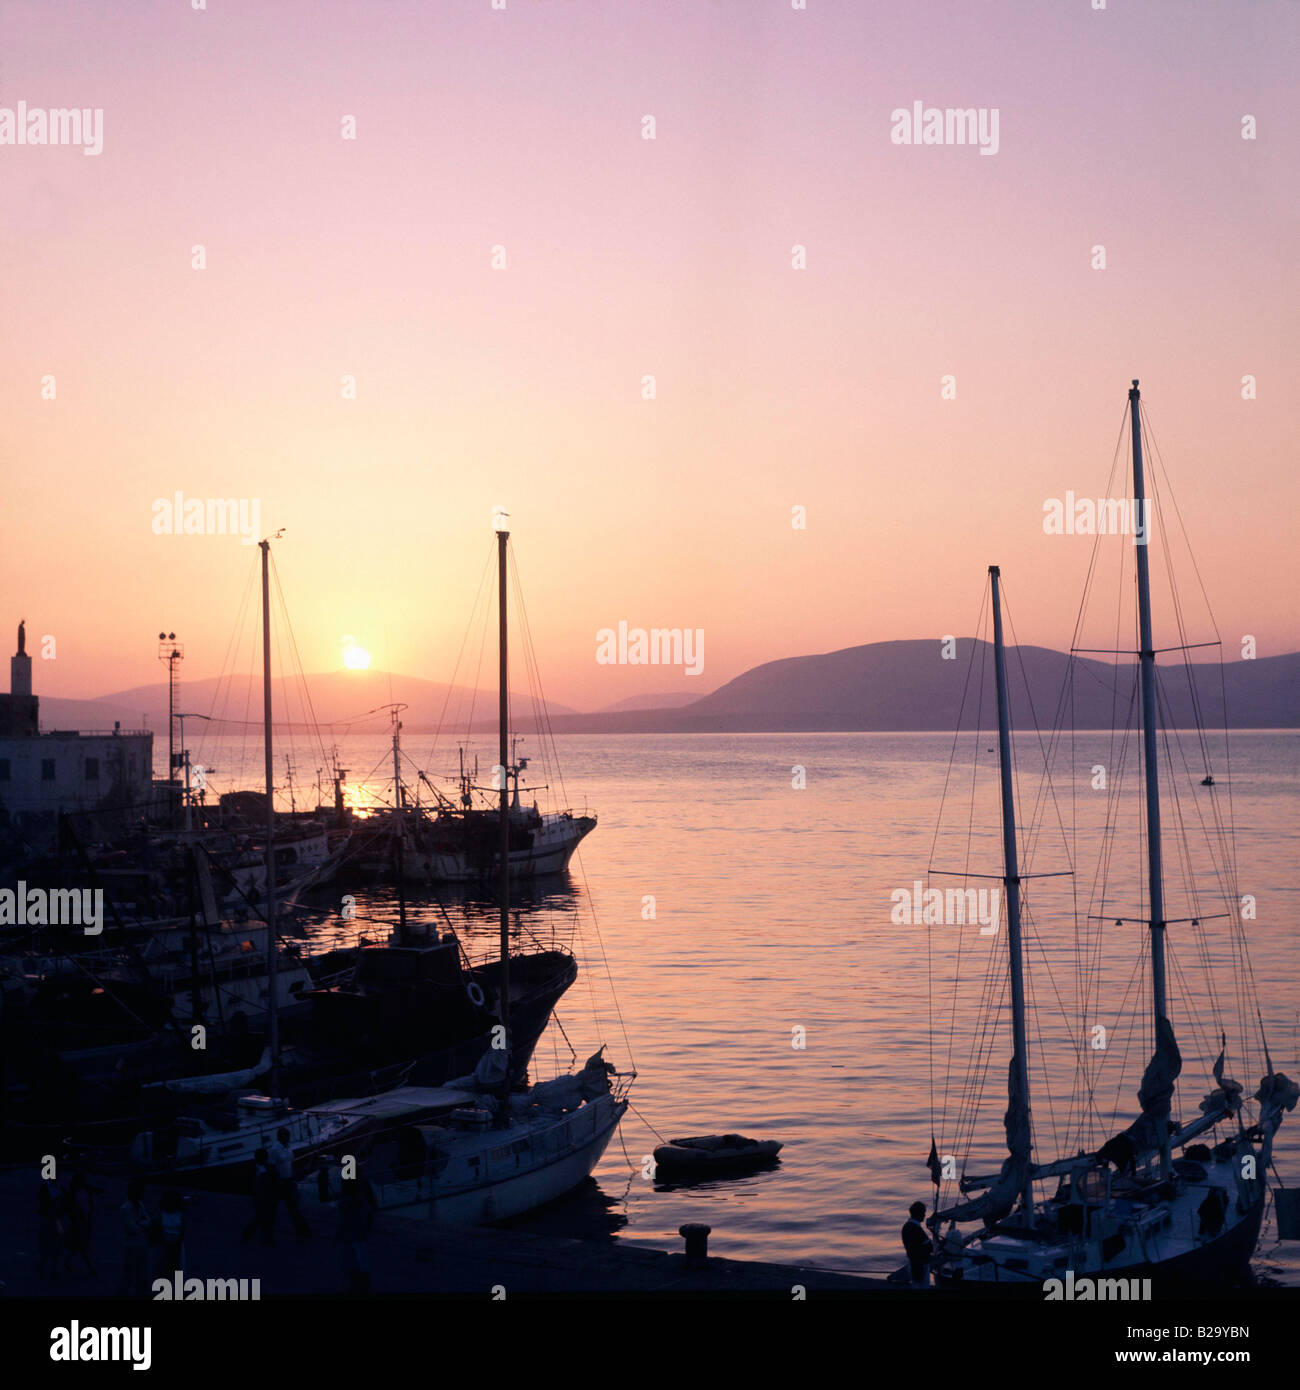 Sardinien Alghero Hafen am Ablauftermin 10 06 2008 Ref UKH025558 0001 obligatorische CREDIT Welt Bilder Photoshot Stockfoto